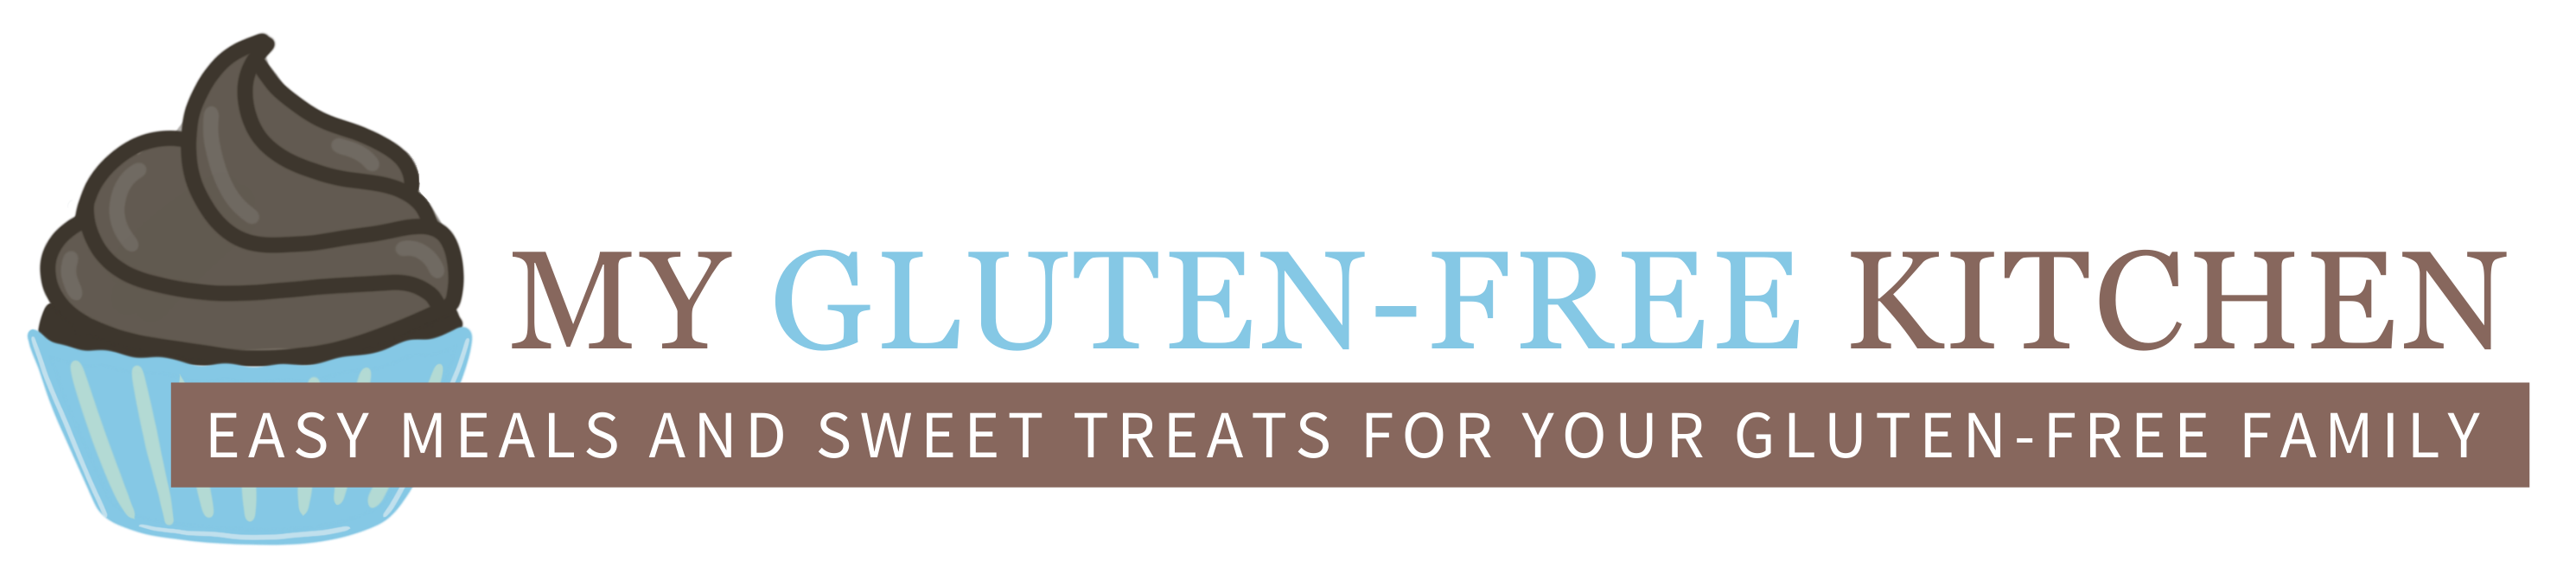 My Gluten-free Kitchen